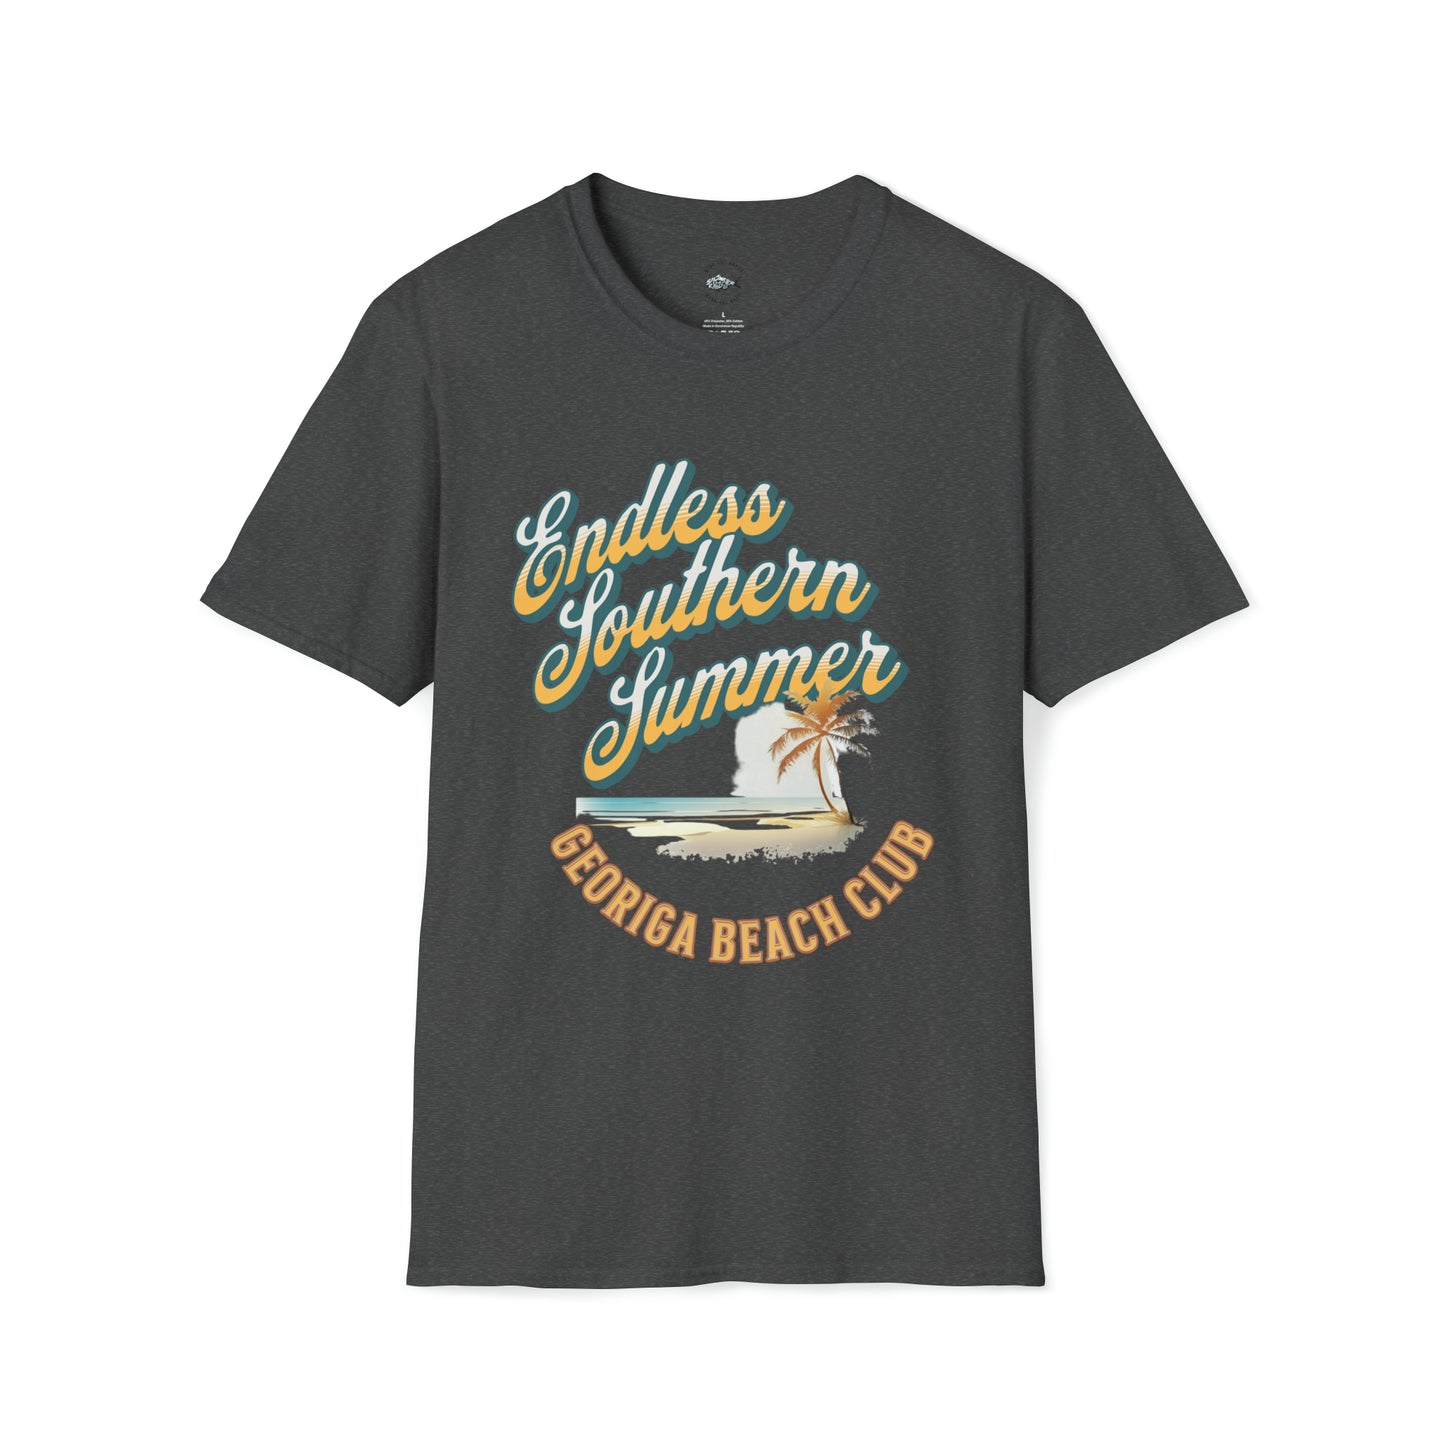 Gerogia Beach Club T-Shirt